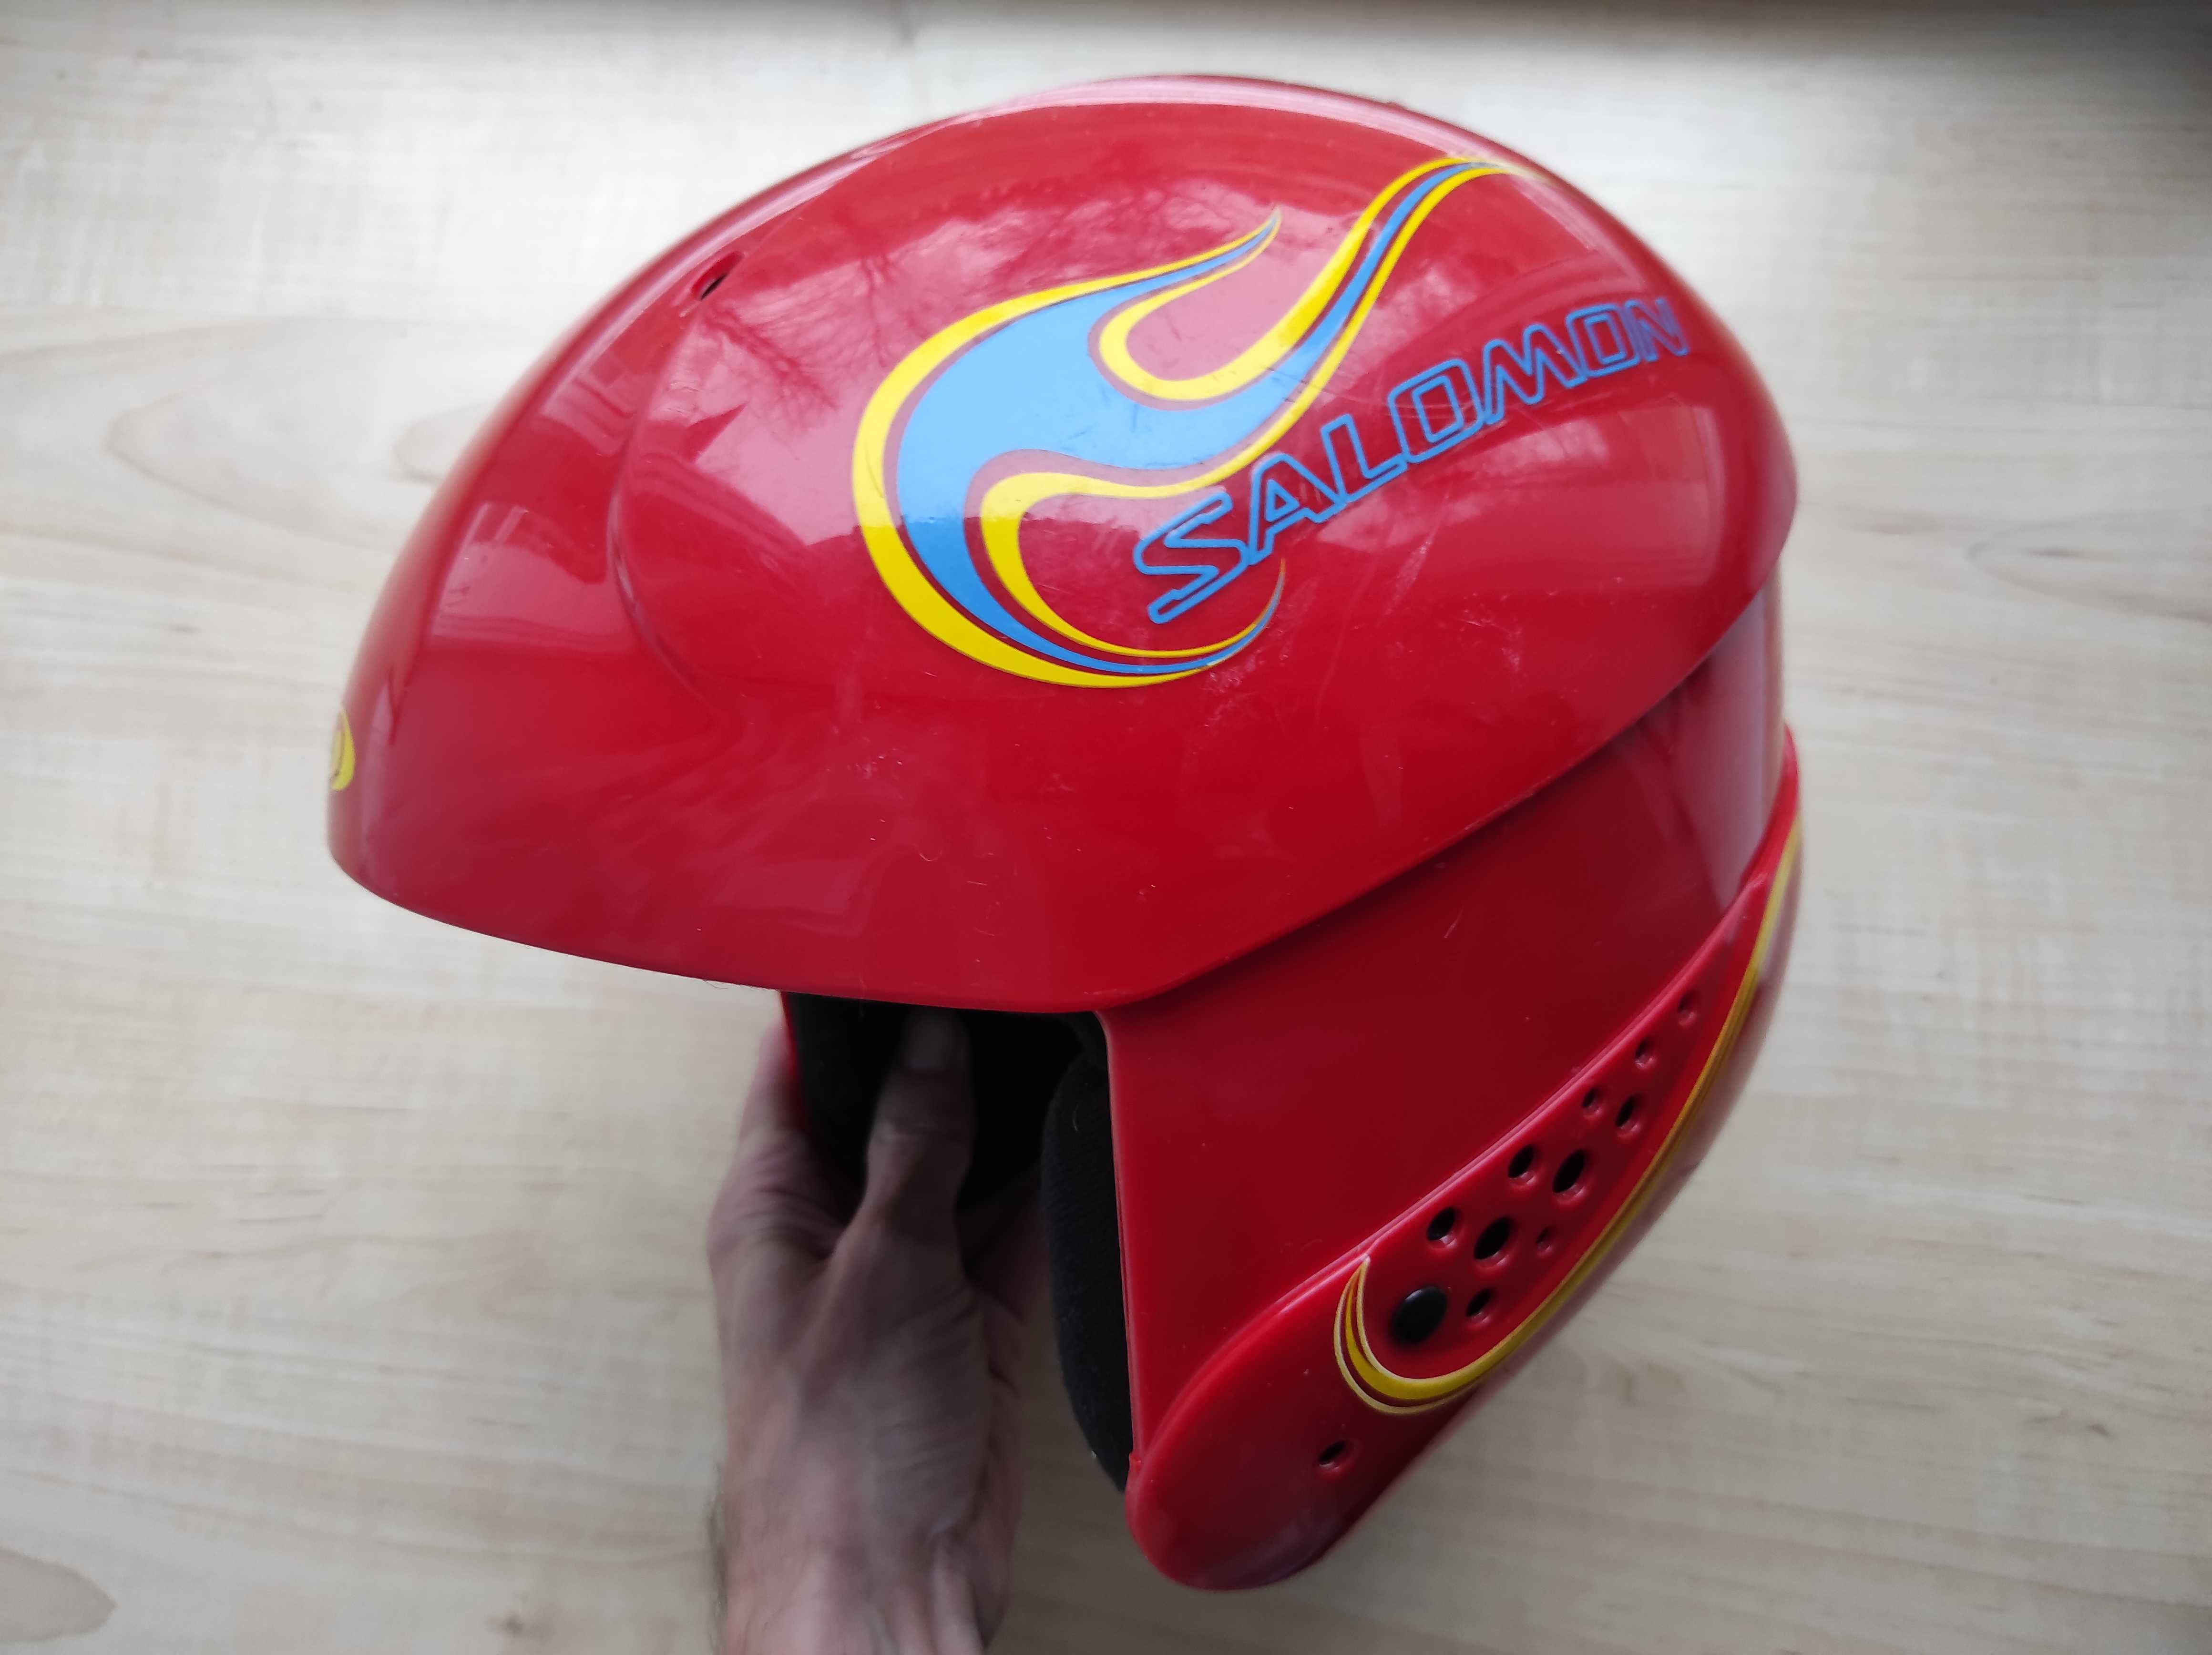 Горнолыжный шлем Salomon Speed Concept, размер 55-56см сноубордический